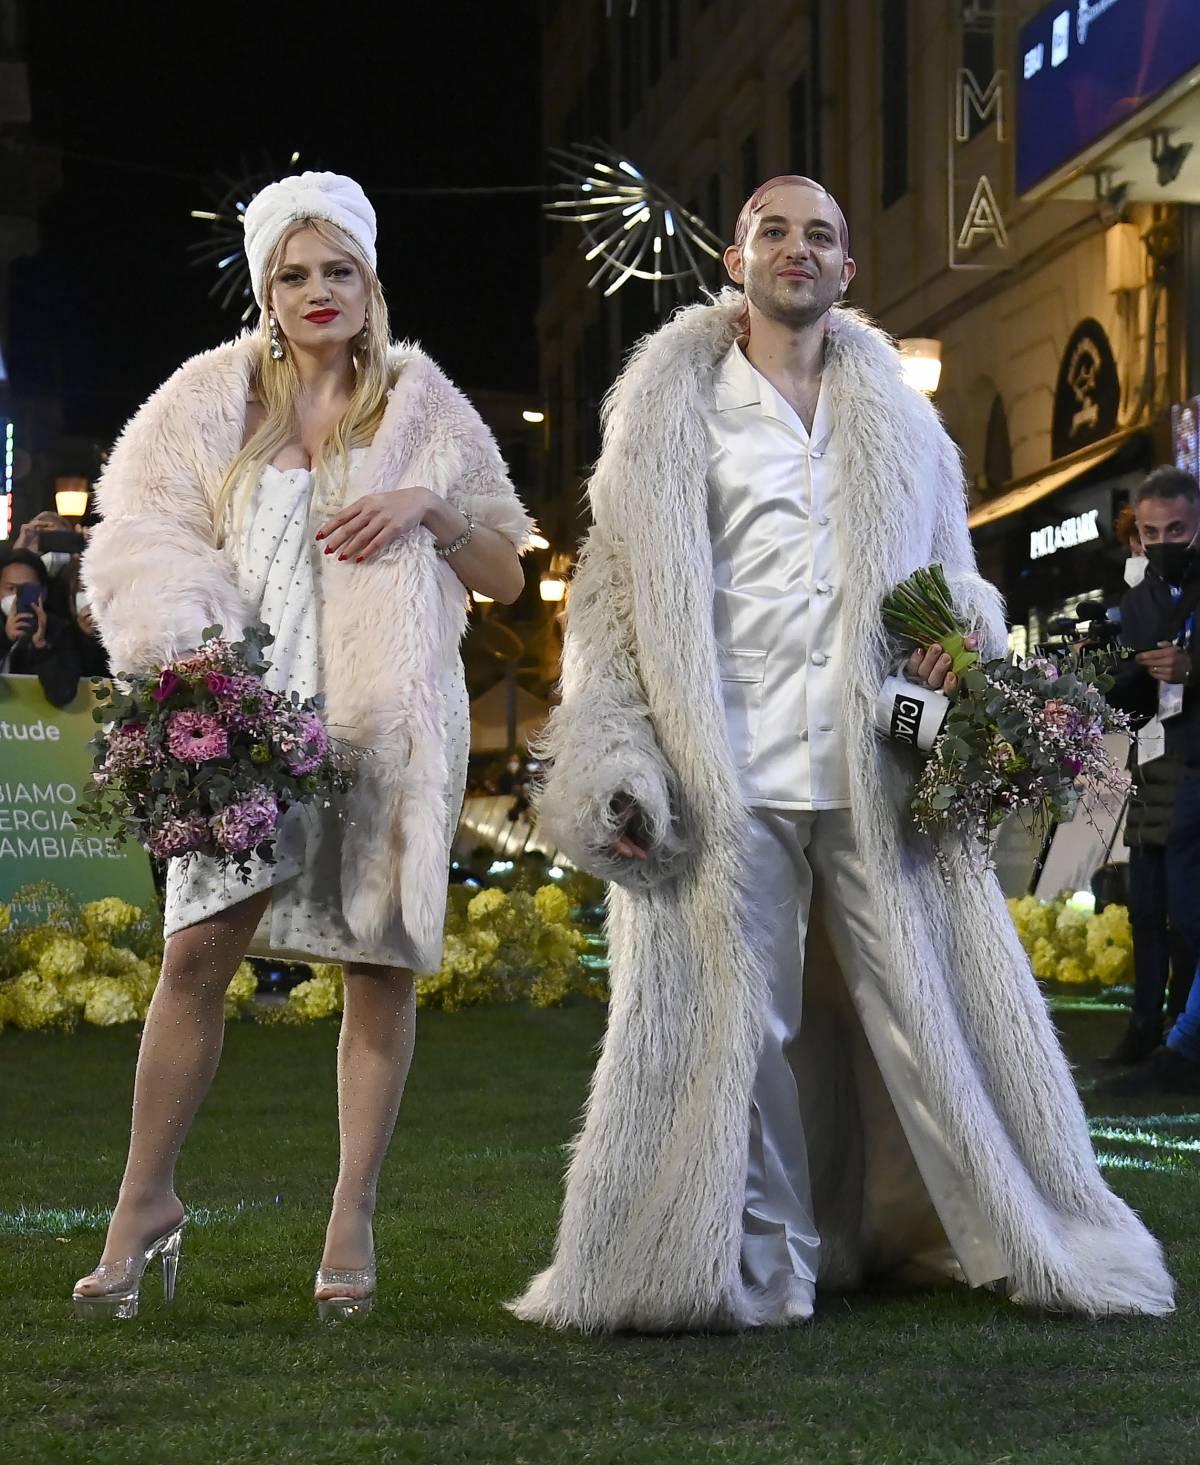 Tanta moda italiana e abiti ricercati per la 72esima edizione del festival di Sanremo